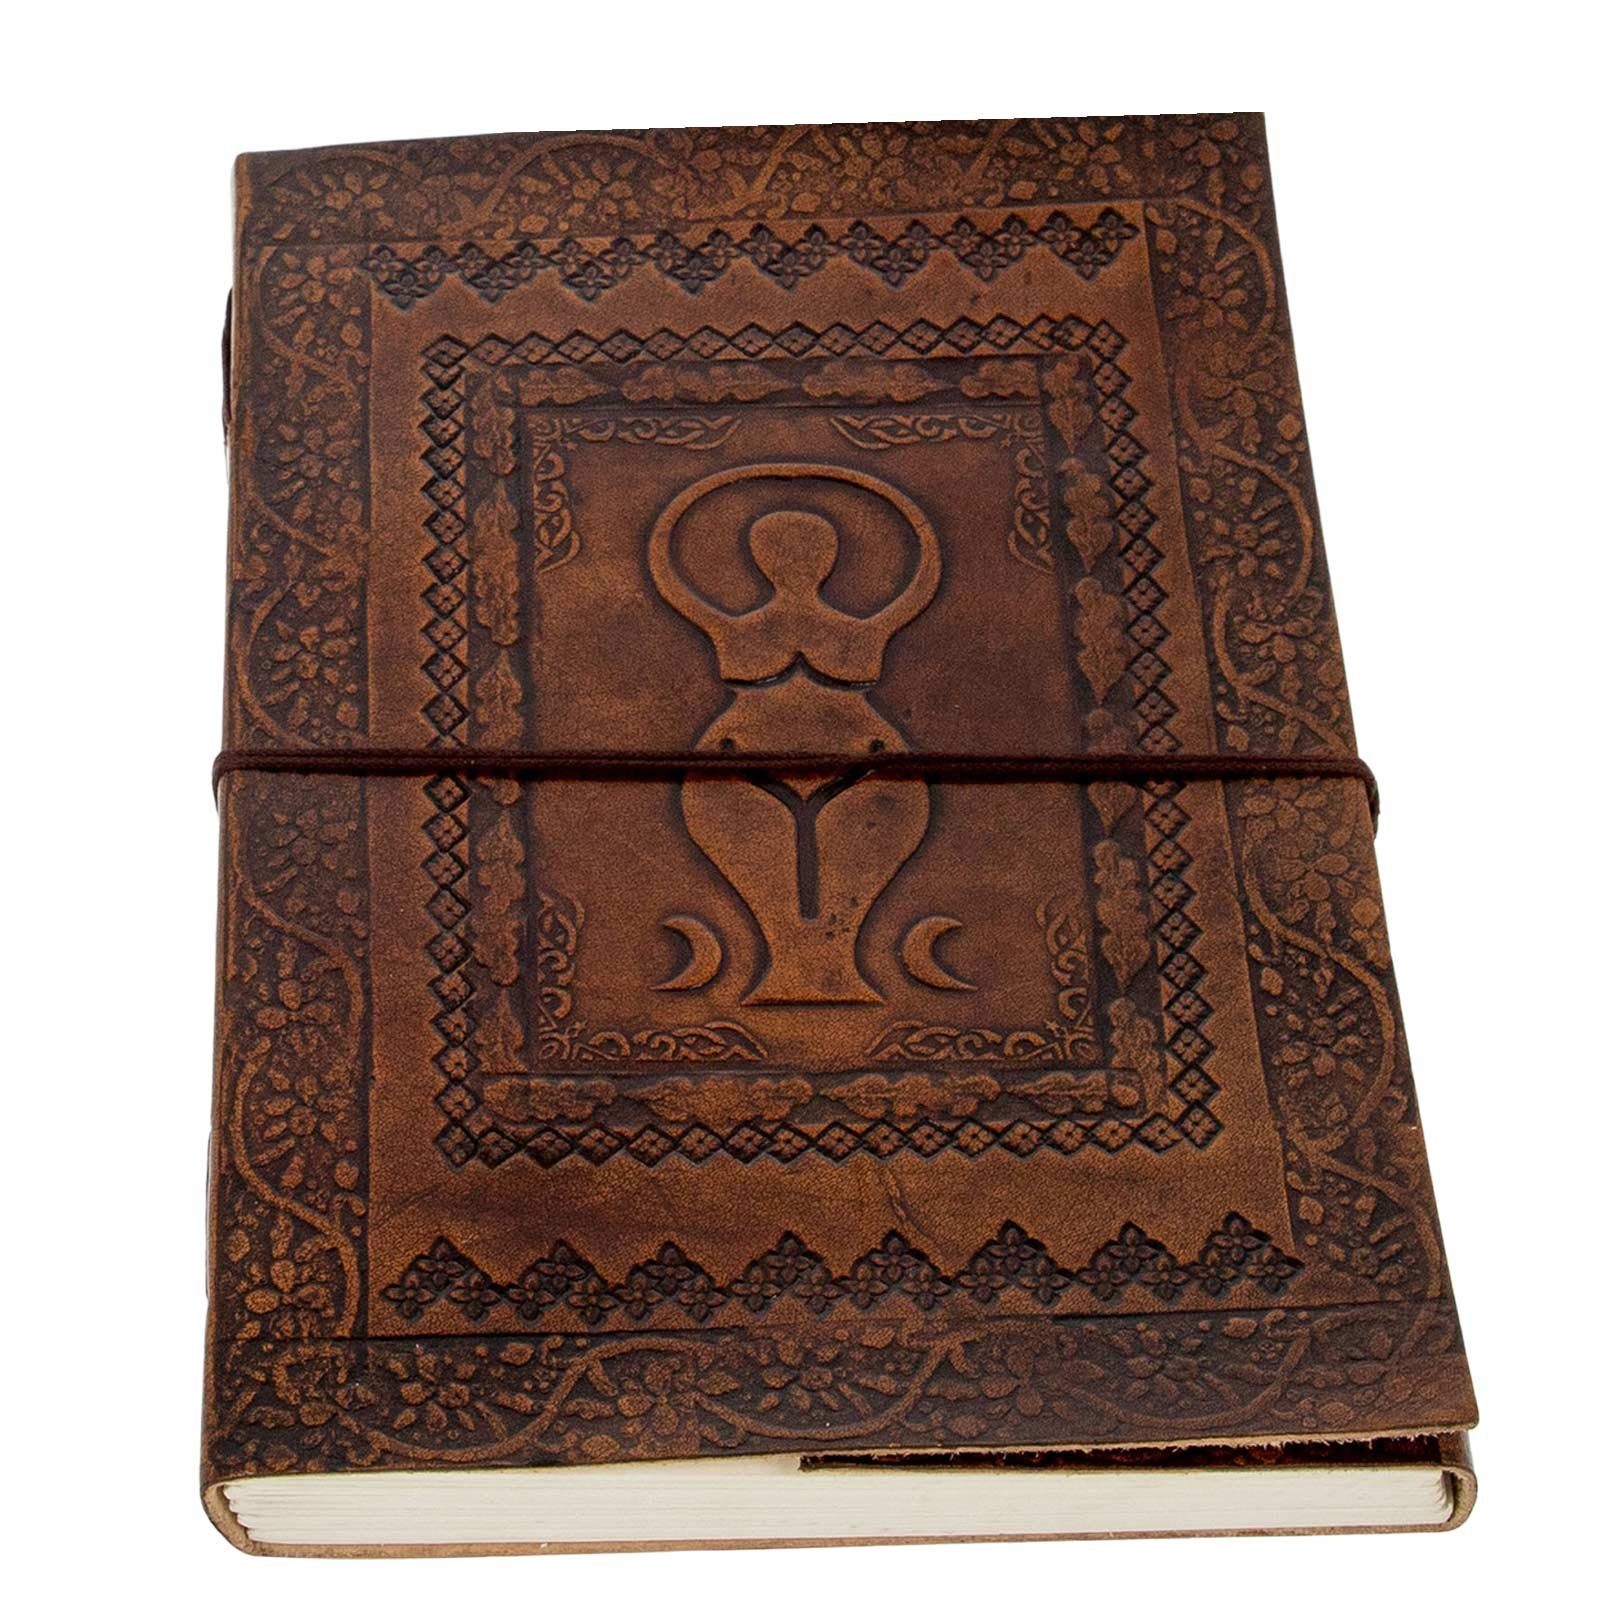 KUNST UND MAGIE Tagebuch Leder Tagebuch Notizbuch Wicca Große Göttin Mondgöttin 25x18cm XL